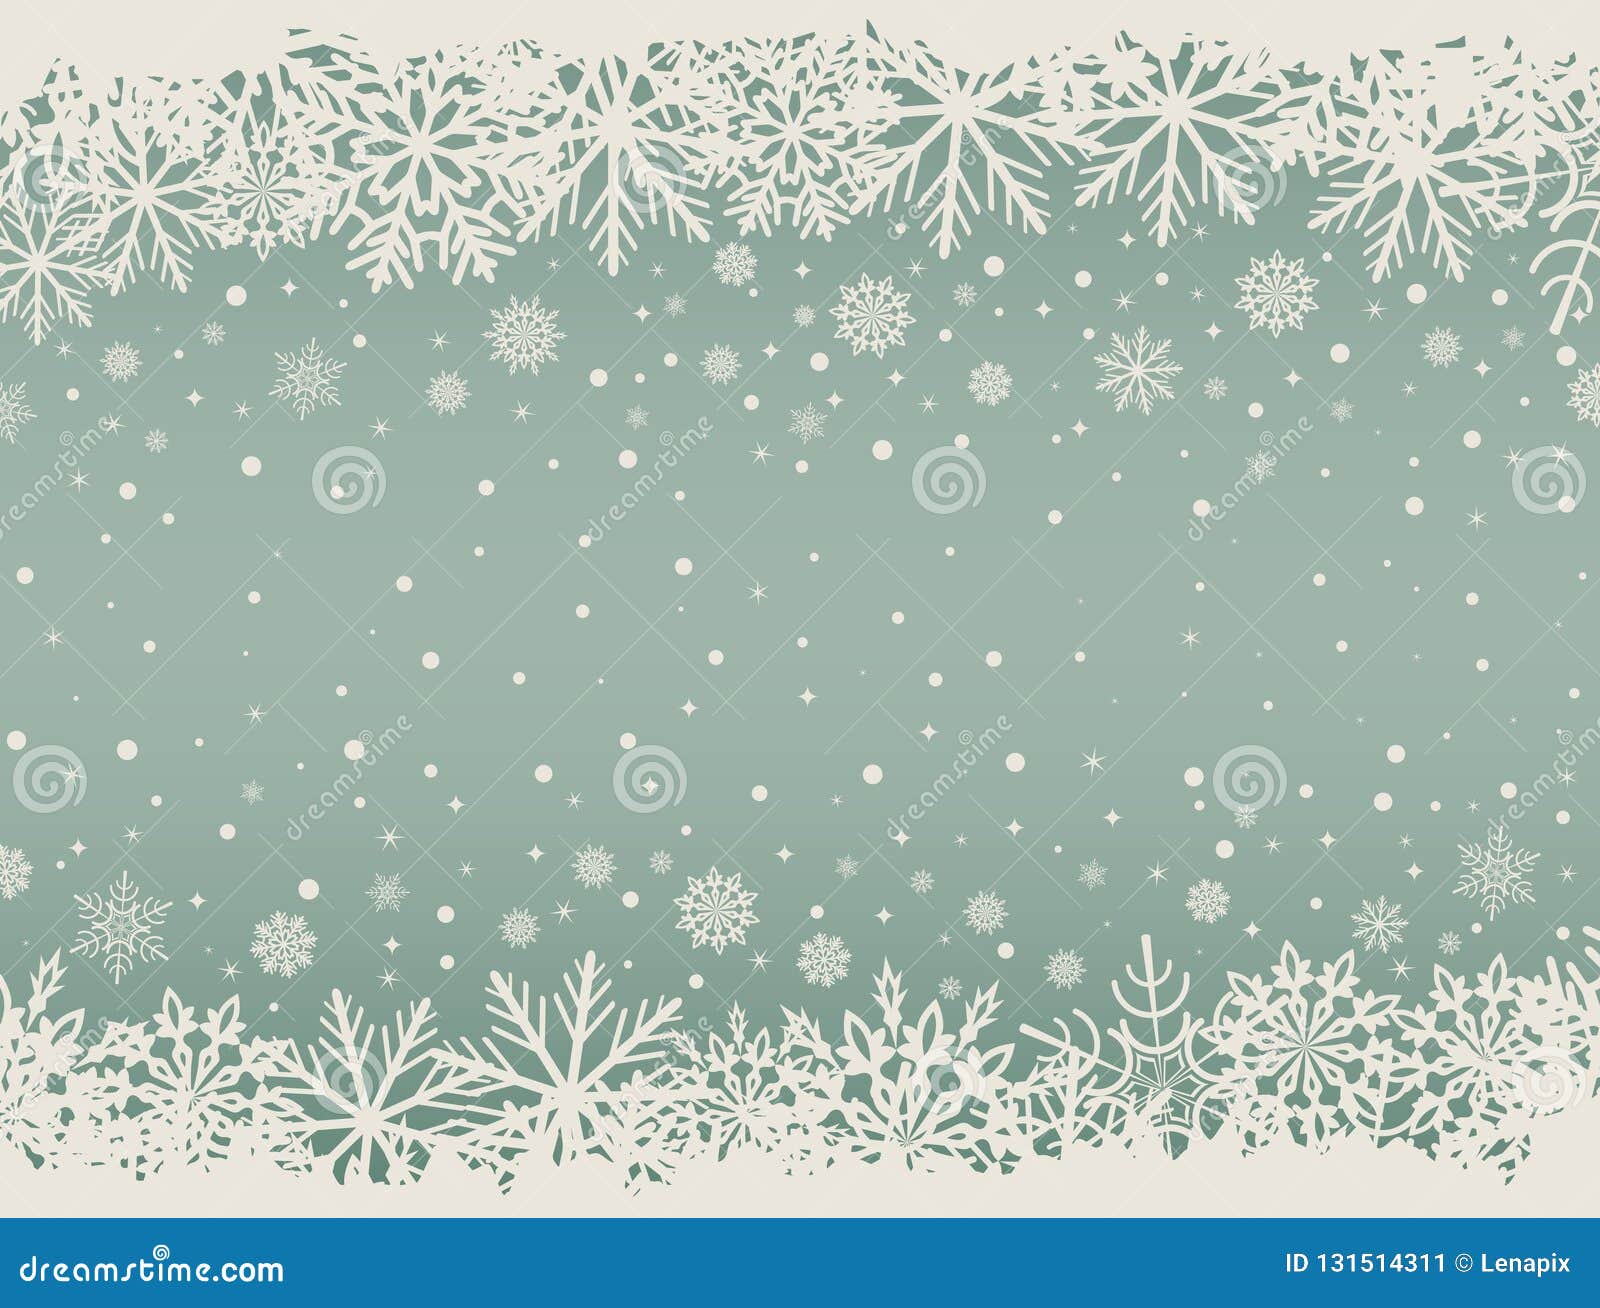 Muôn vàn hoa tuyết trắng rụng rơi trên nền xanh Giáng sinh ấm áp, tạo nên bầu không khí đầy yêu thương và hạnh phúc. Nhấp vào hình nền Giáng sinh này để chìm đắm trong không gian noel đầy lạc quan và ấm áp nhé!